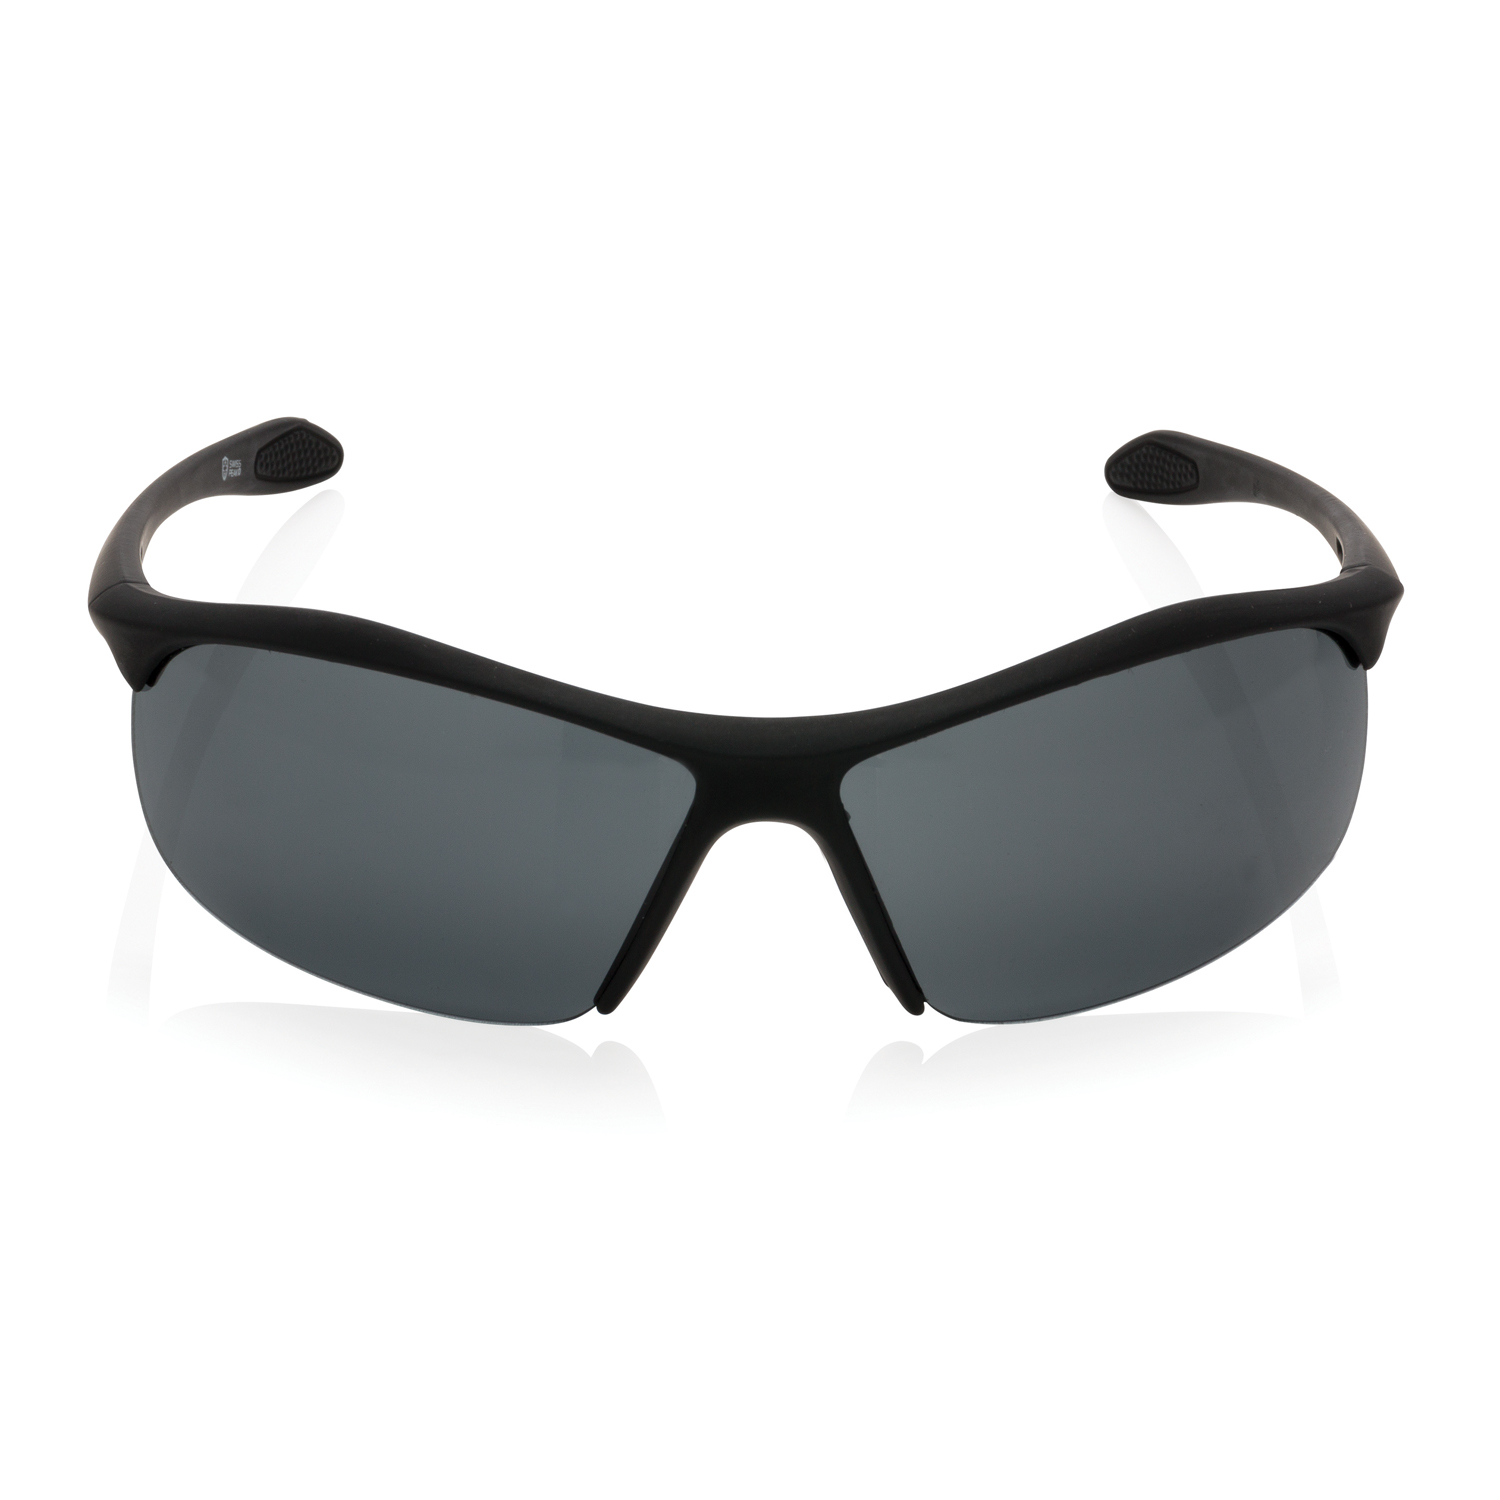 Спортивные солнцезащитные очки Swiss Peak